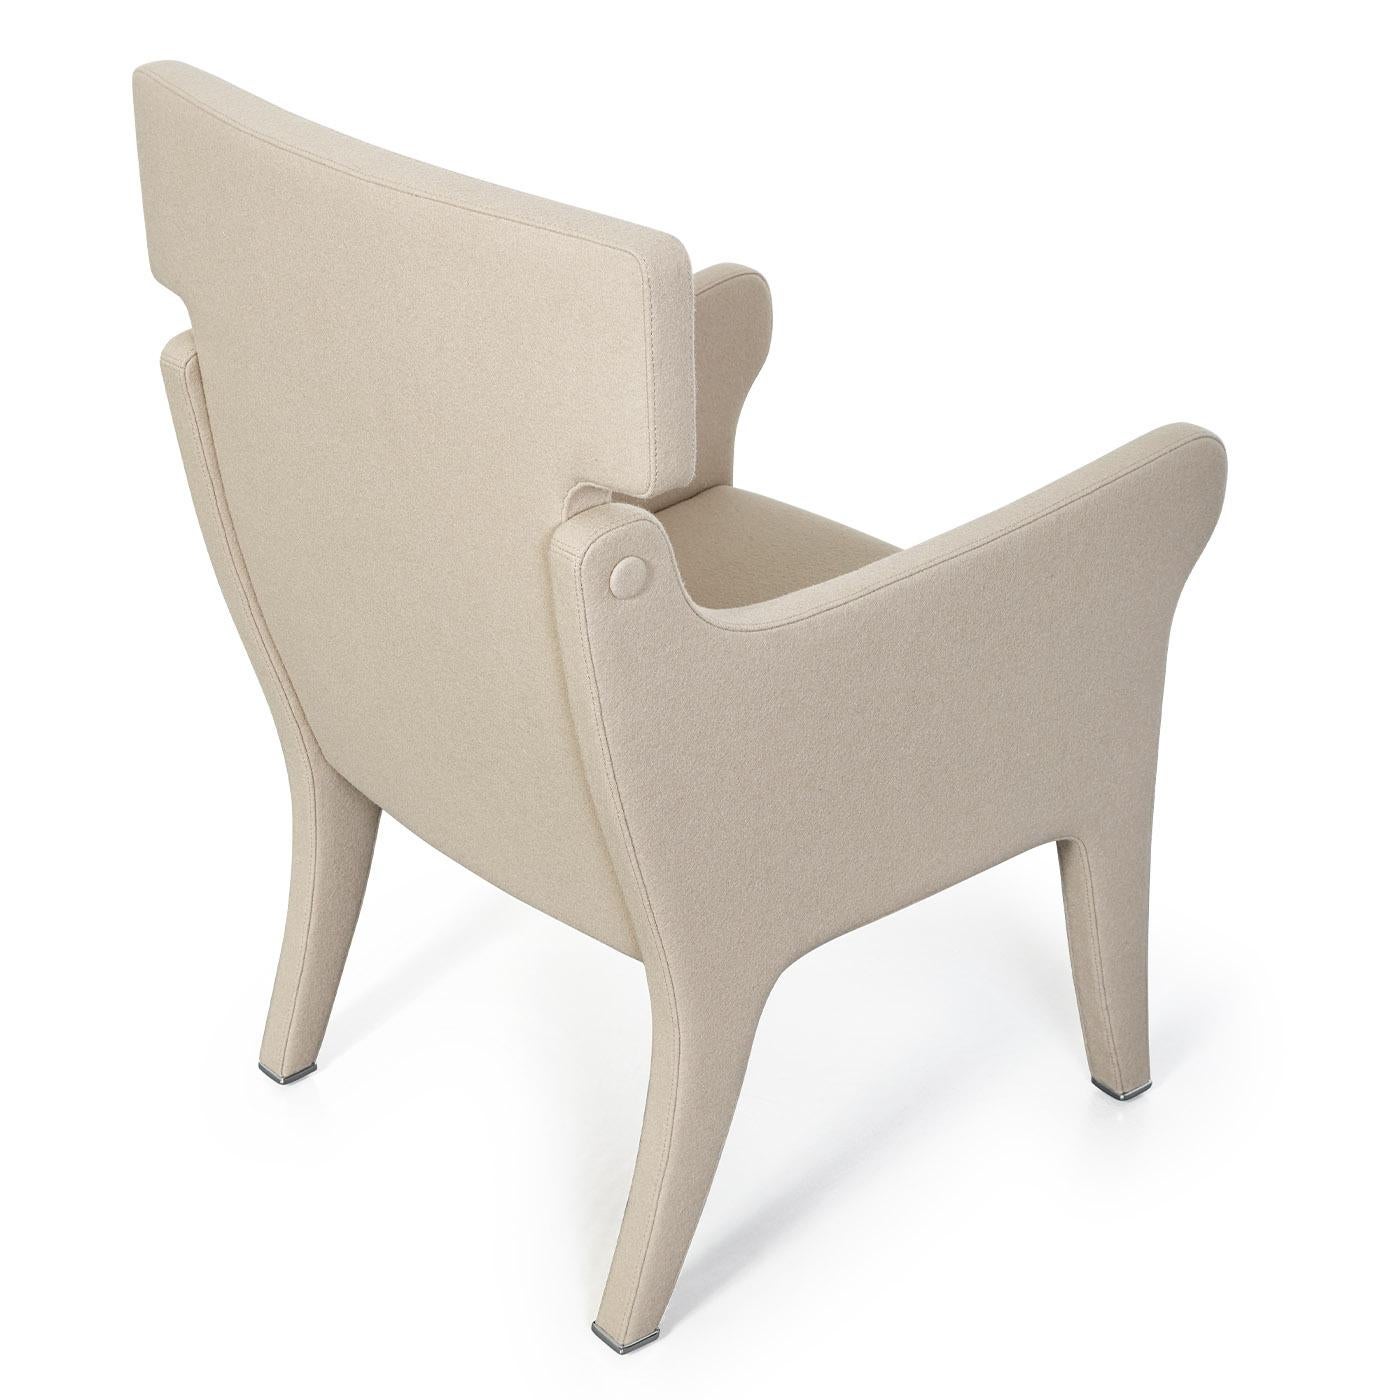 Ce fauteuil d'Ignazio Gardella, au design exquis et à l'allure contemporaine emblématique, se distingue par un revêtement en laine feutrée qui recouvre toute sa forme. Réalisé dans un ton blanc crème, également disponible dans d'autres teintes, il